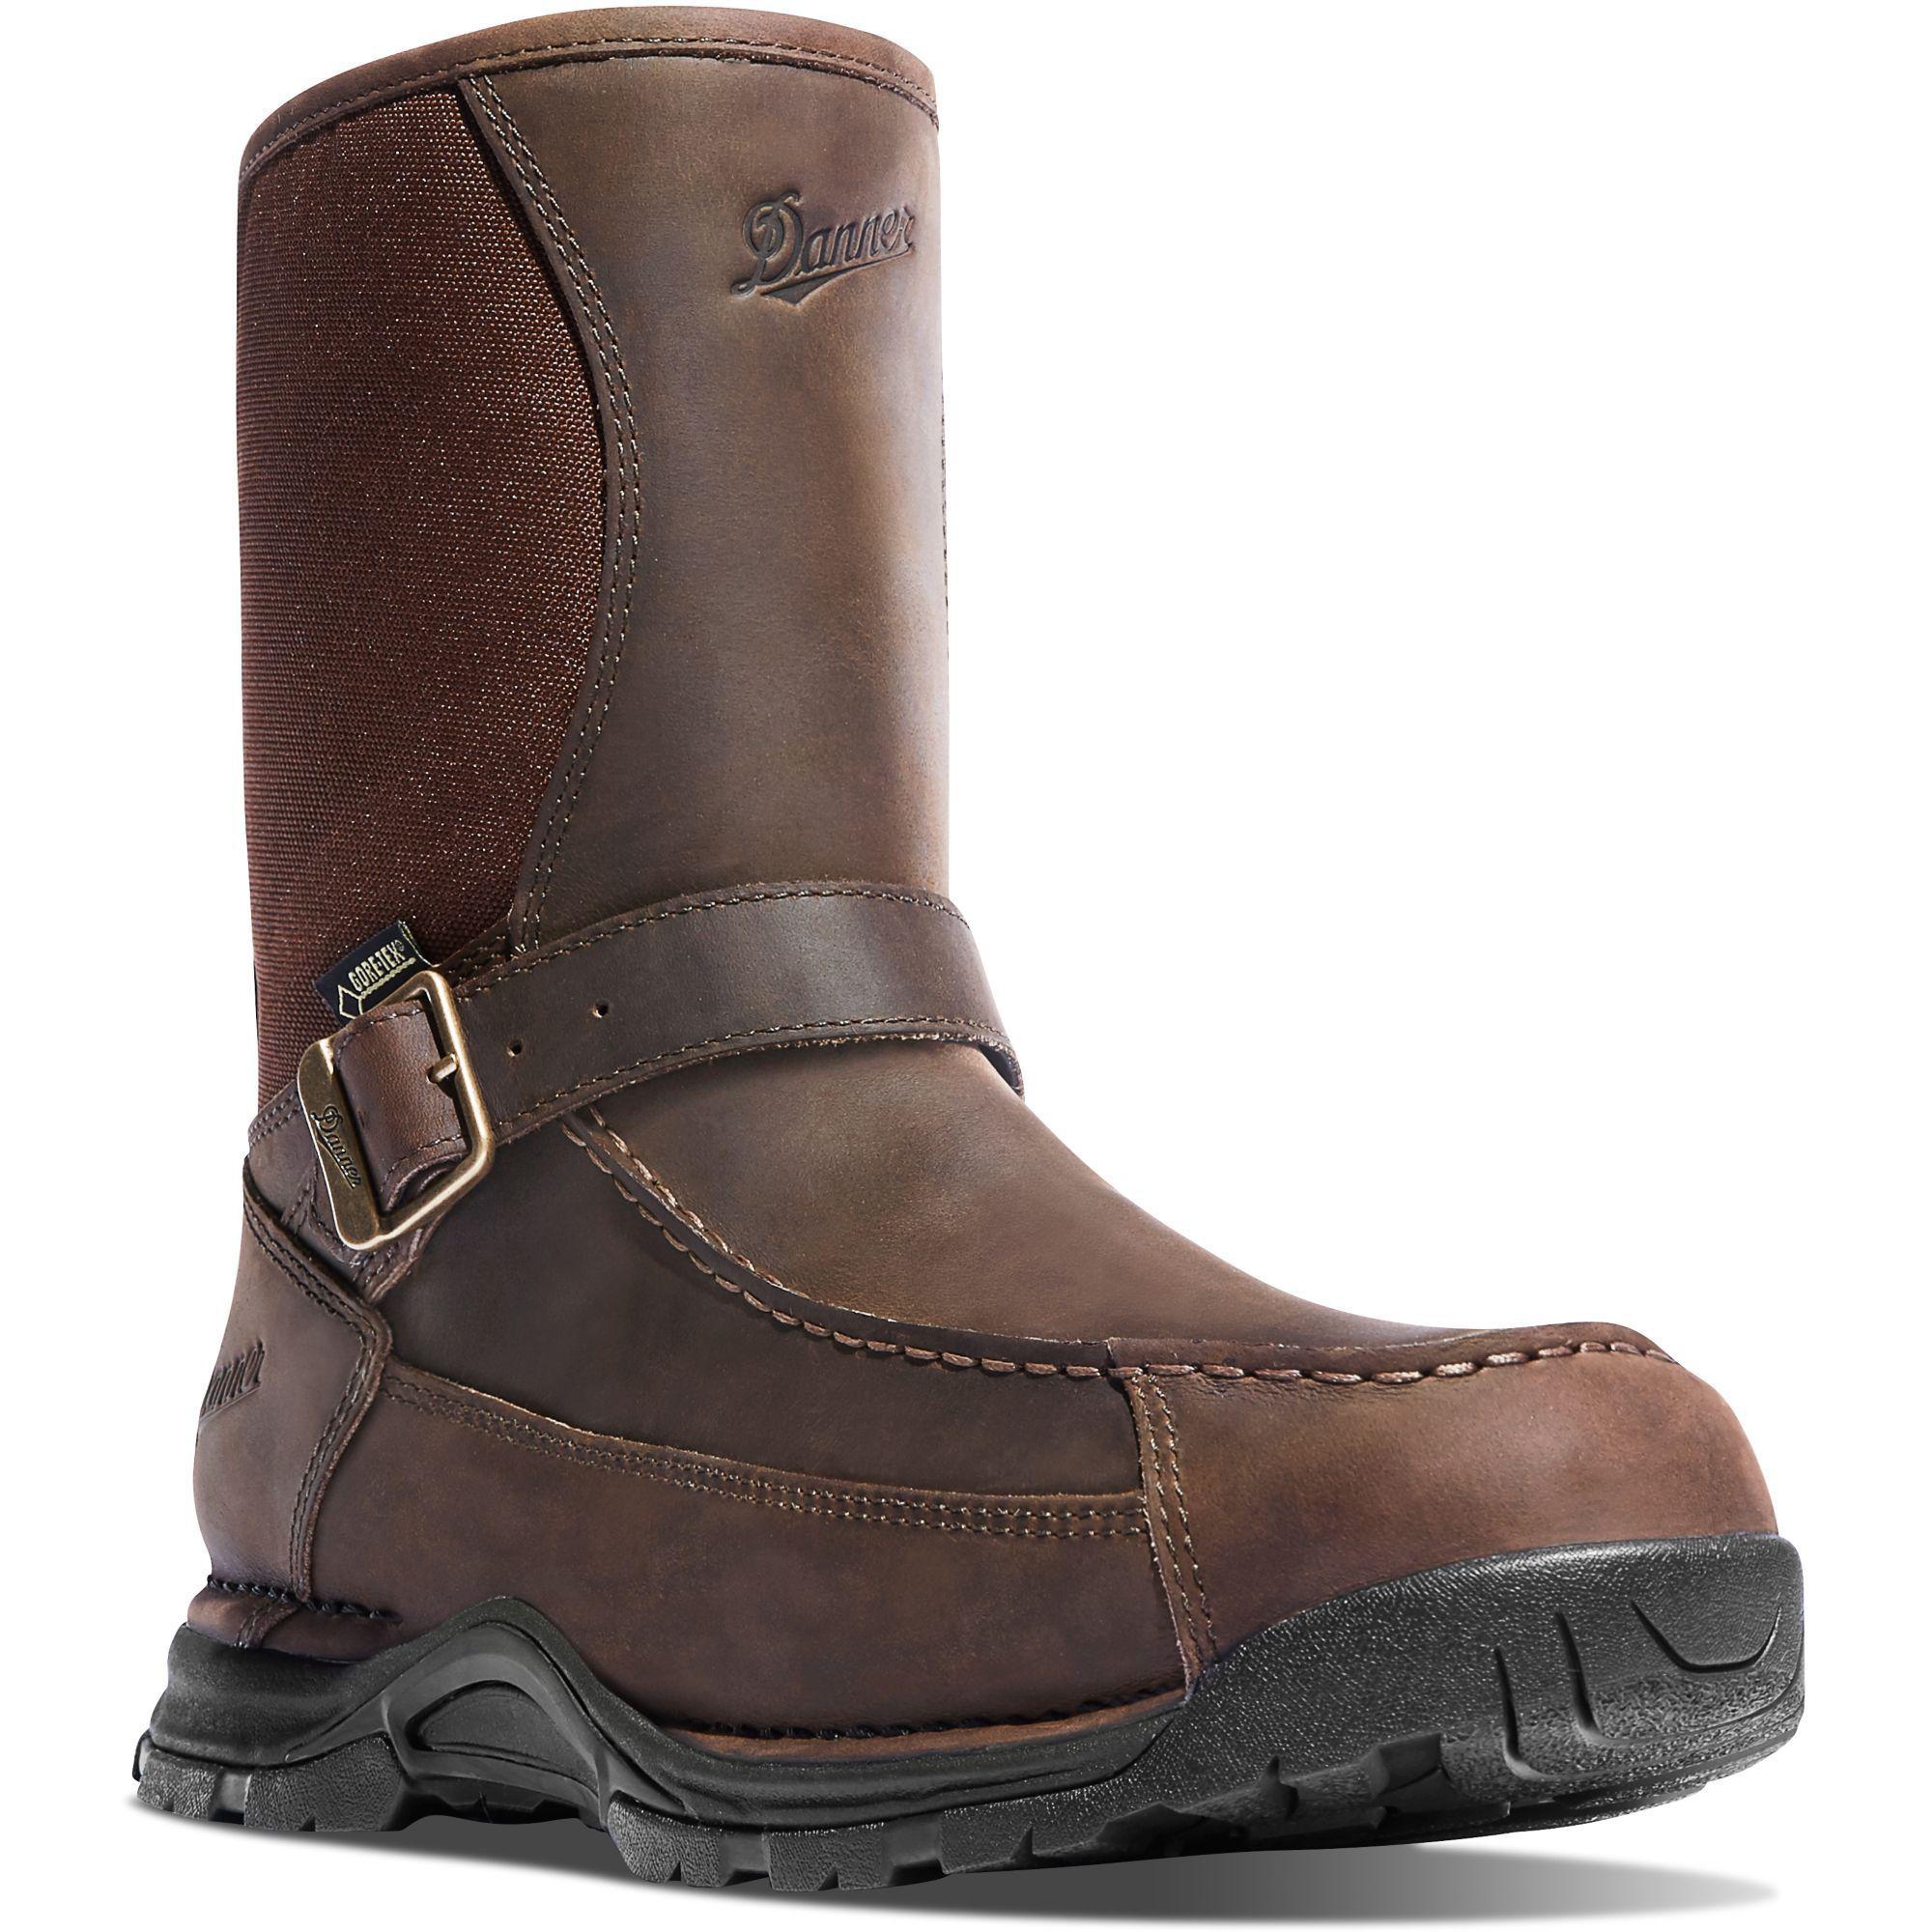 Danner Men's Sharptail 10" Rear Zip Waterproof Hunt Boot Brown - 45025 7 / Medium / Brown - Overlook Boots